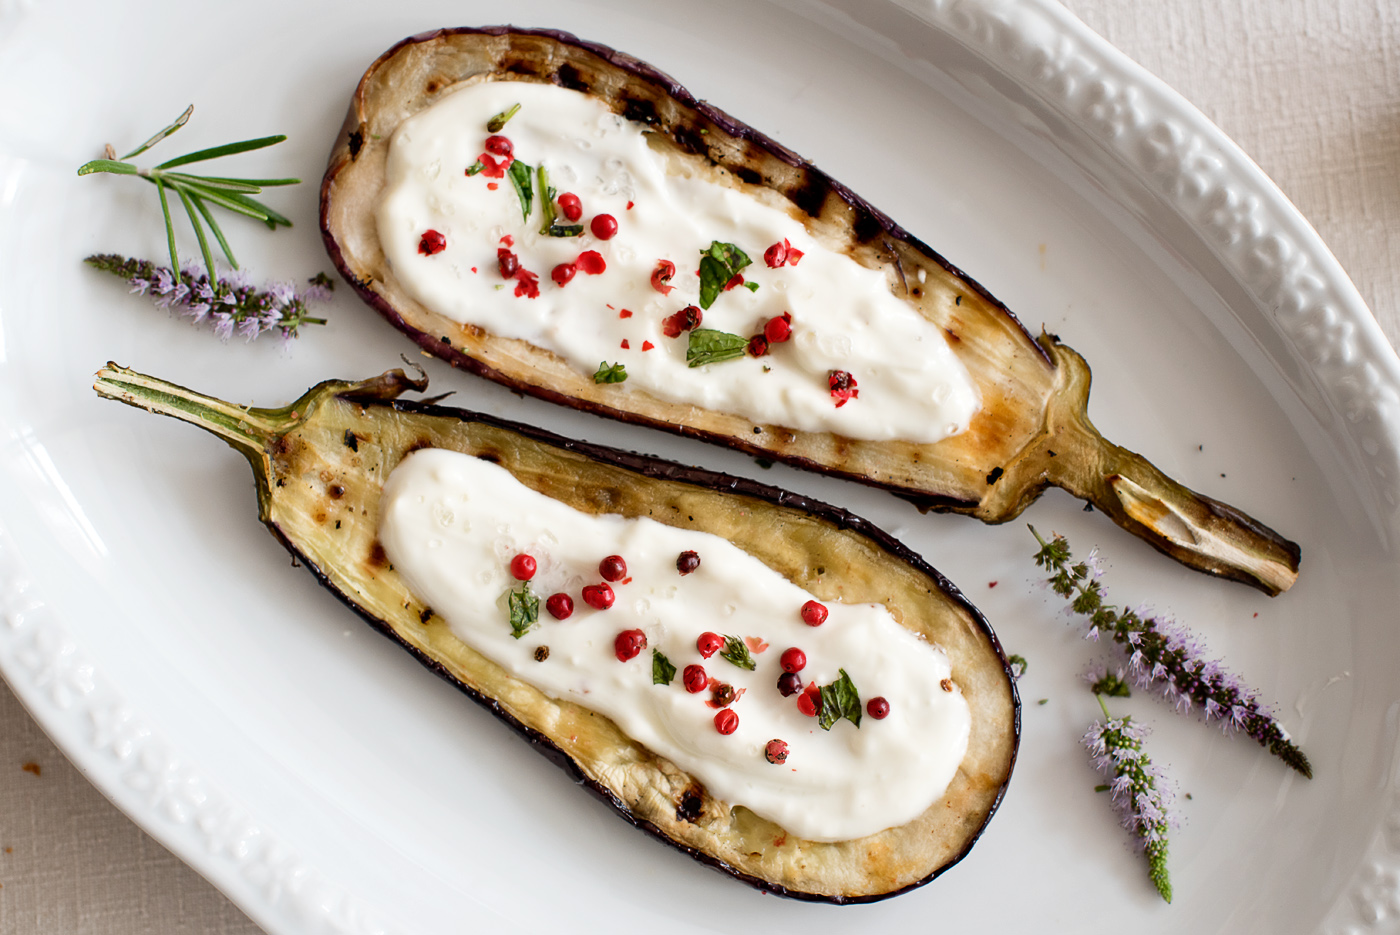 auberginenrezepte-gegrillt-dahlien-bauervase-mediterranesessen-foodblog-8